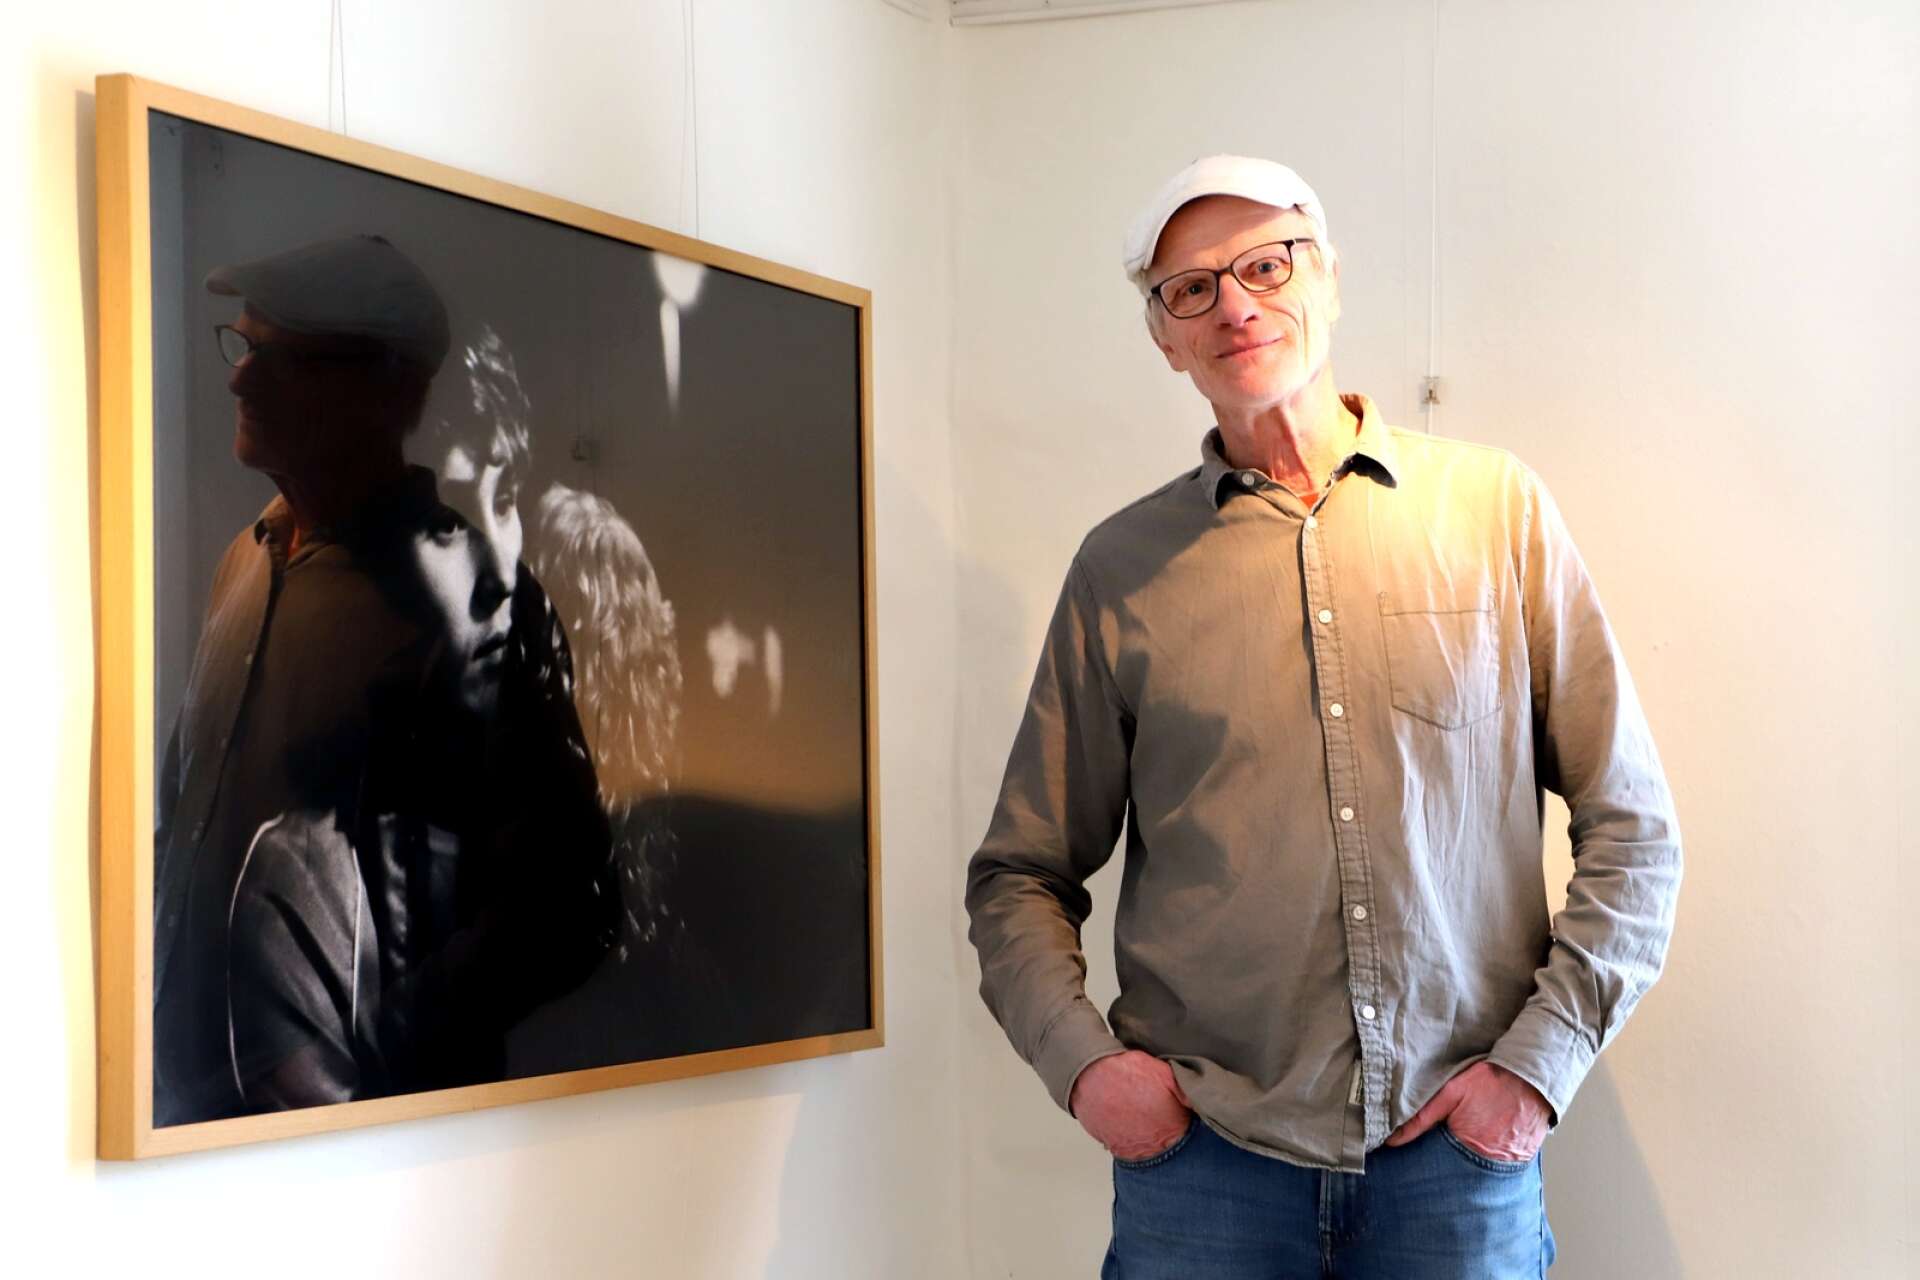 Fotografen Staffan Jofjell belönades med det prestigefyllda Thor Fagerkviststipendiet under 2022. Nu kommer han till Rackstadsmuseet för att ställa ut.